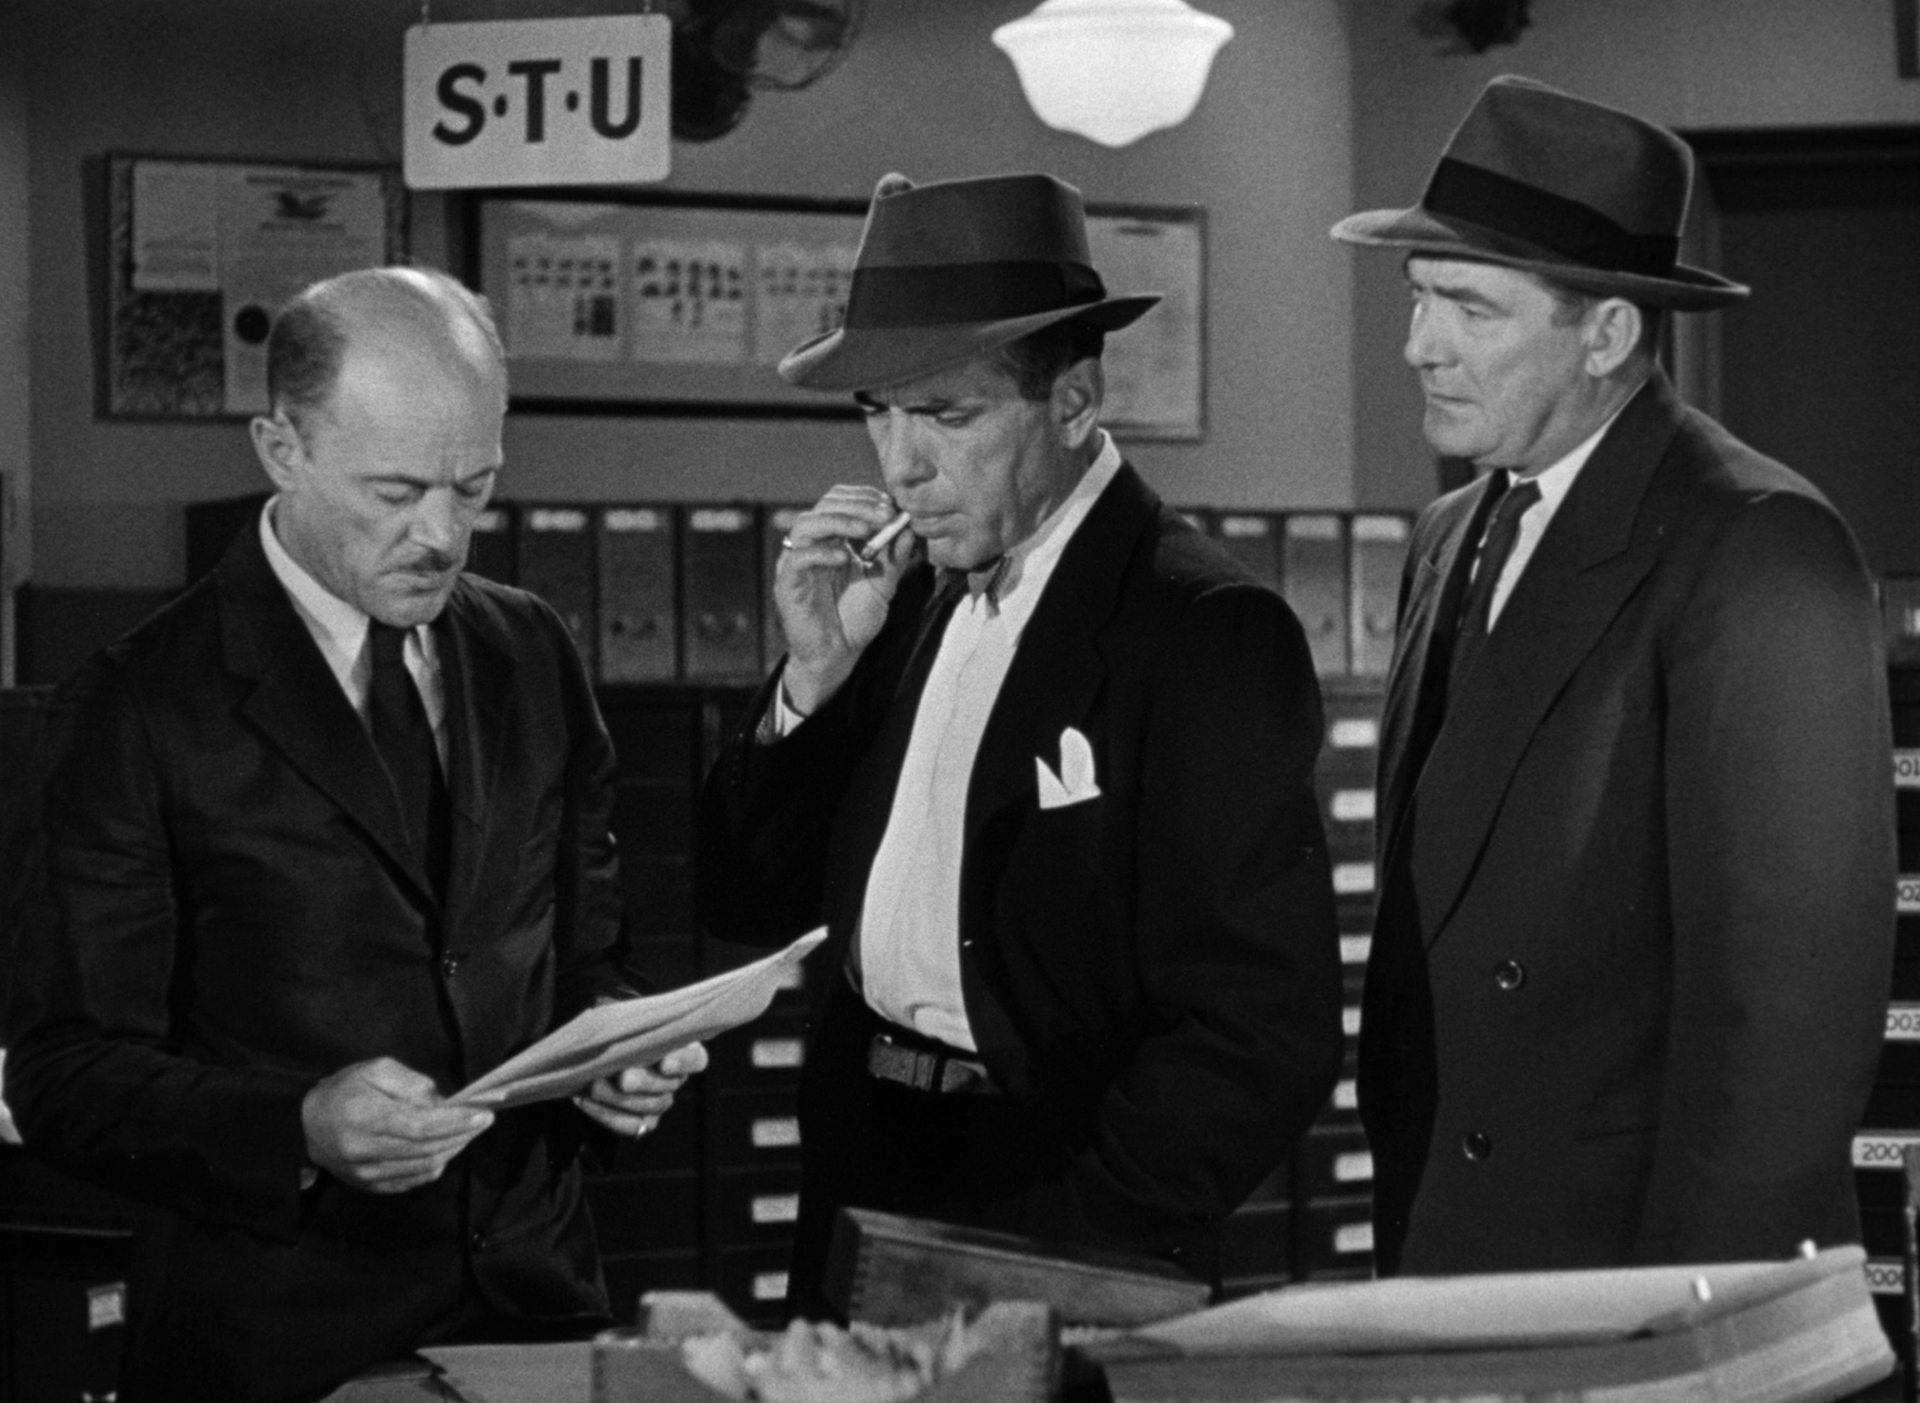 Schwarz-Weiß-Szene in einem Büro: Humphrey Bogart als Staatsanwalt in Begleitung eines Cops im Gespräch mit einem Angestellten, der in einer Akte liest; Bogart trägt Fedora und zieht gerade an seiner Zigarette.